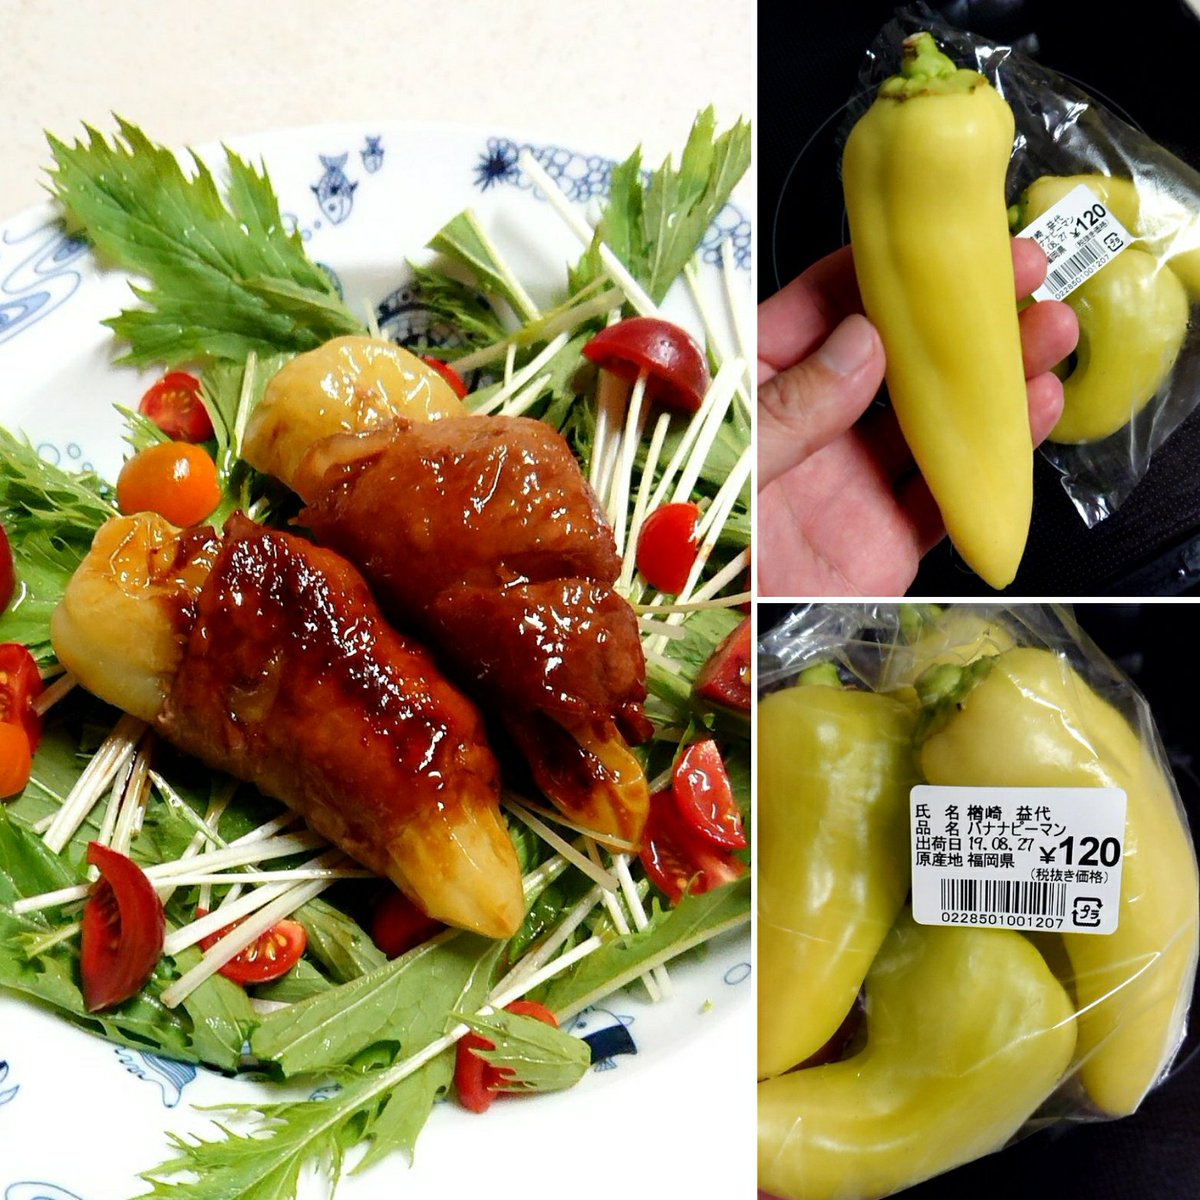 K T R From Fukuoka バナナピーマン初めて買ってみた まるごとバナナピーマンの 肉巻き甘辛煮 作ったよー 苦味 種が少ないので まるごといけますよ バナナピーマン 肉巻き おうちごはん グルメ おかず レシピ Food T Co